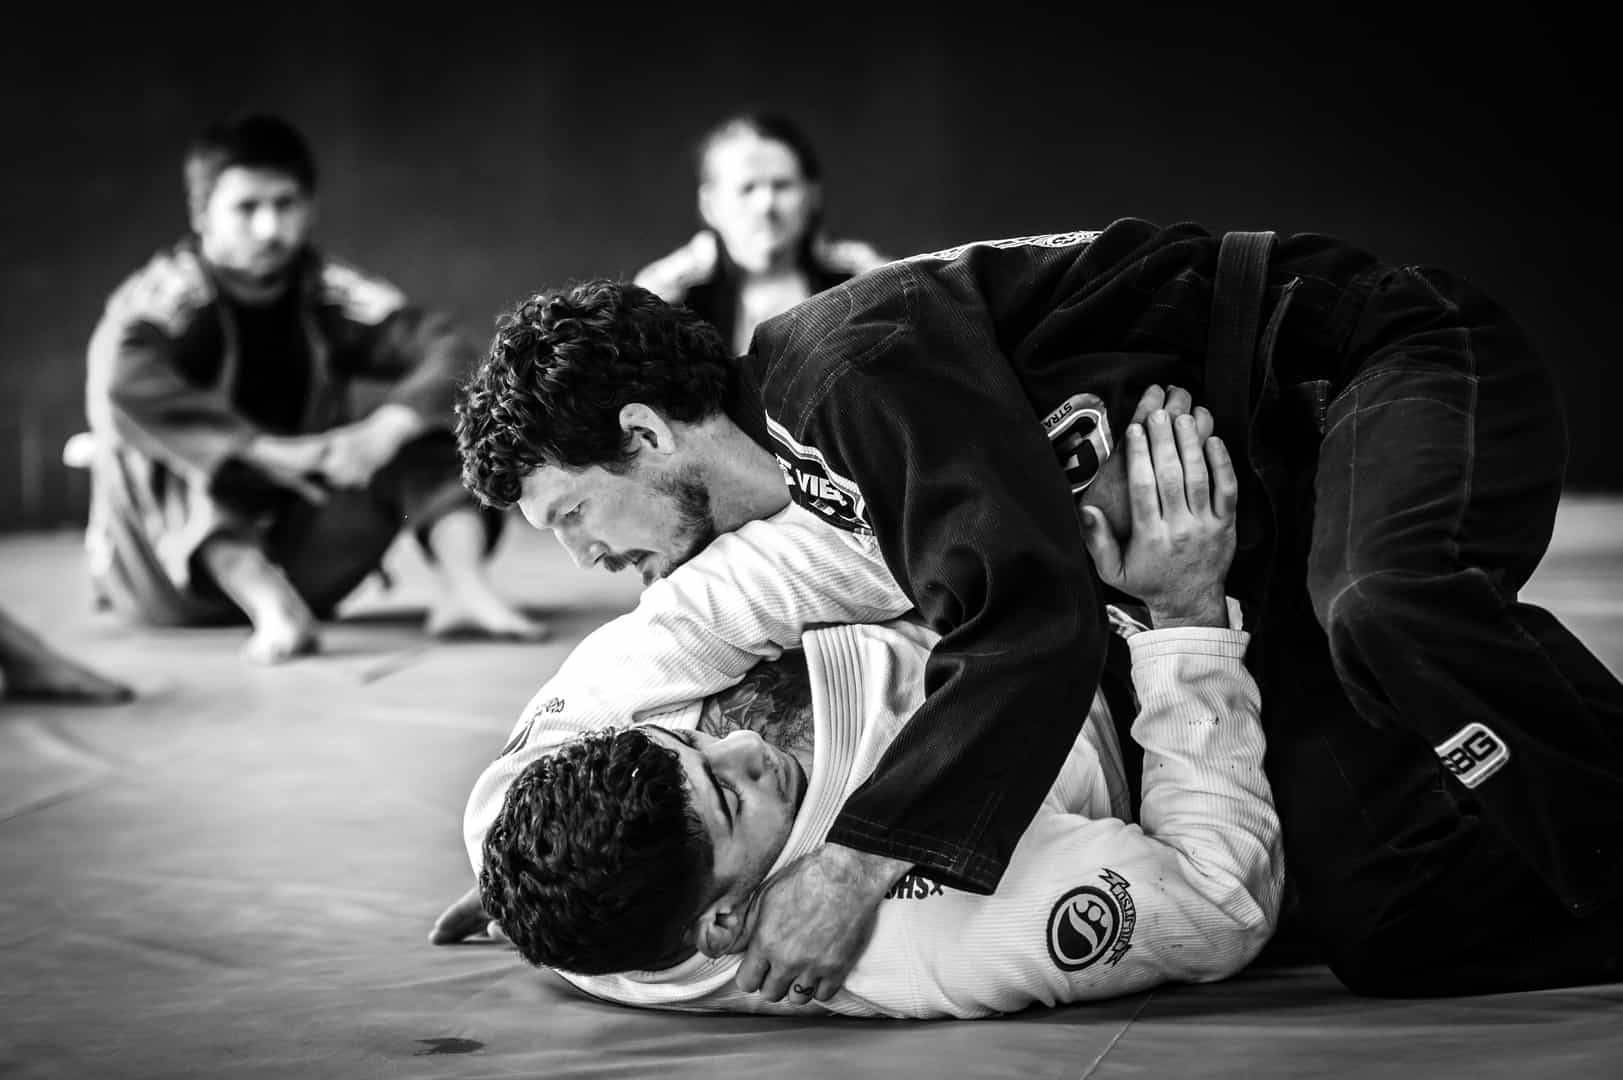 Download Brazilian Jiu-jitsu Closed Guard Position Wallpaper | Wallpapers .com